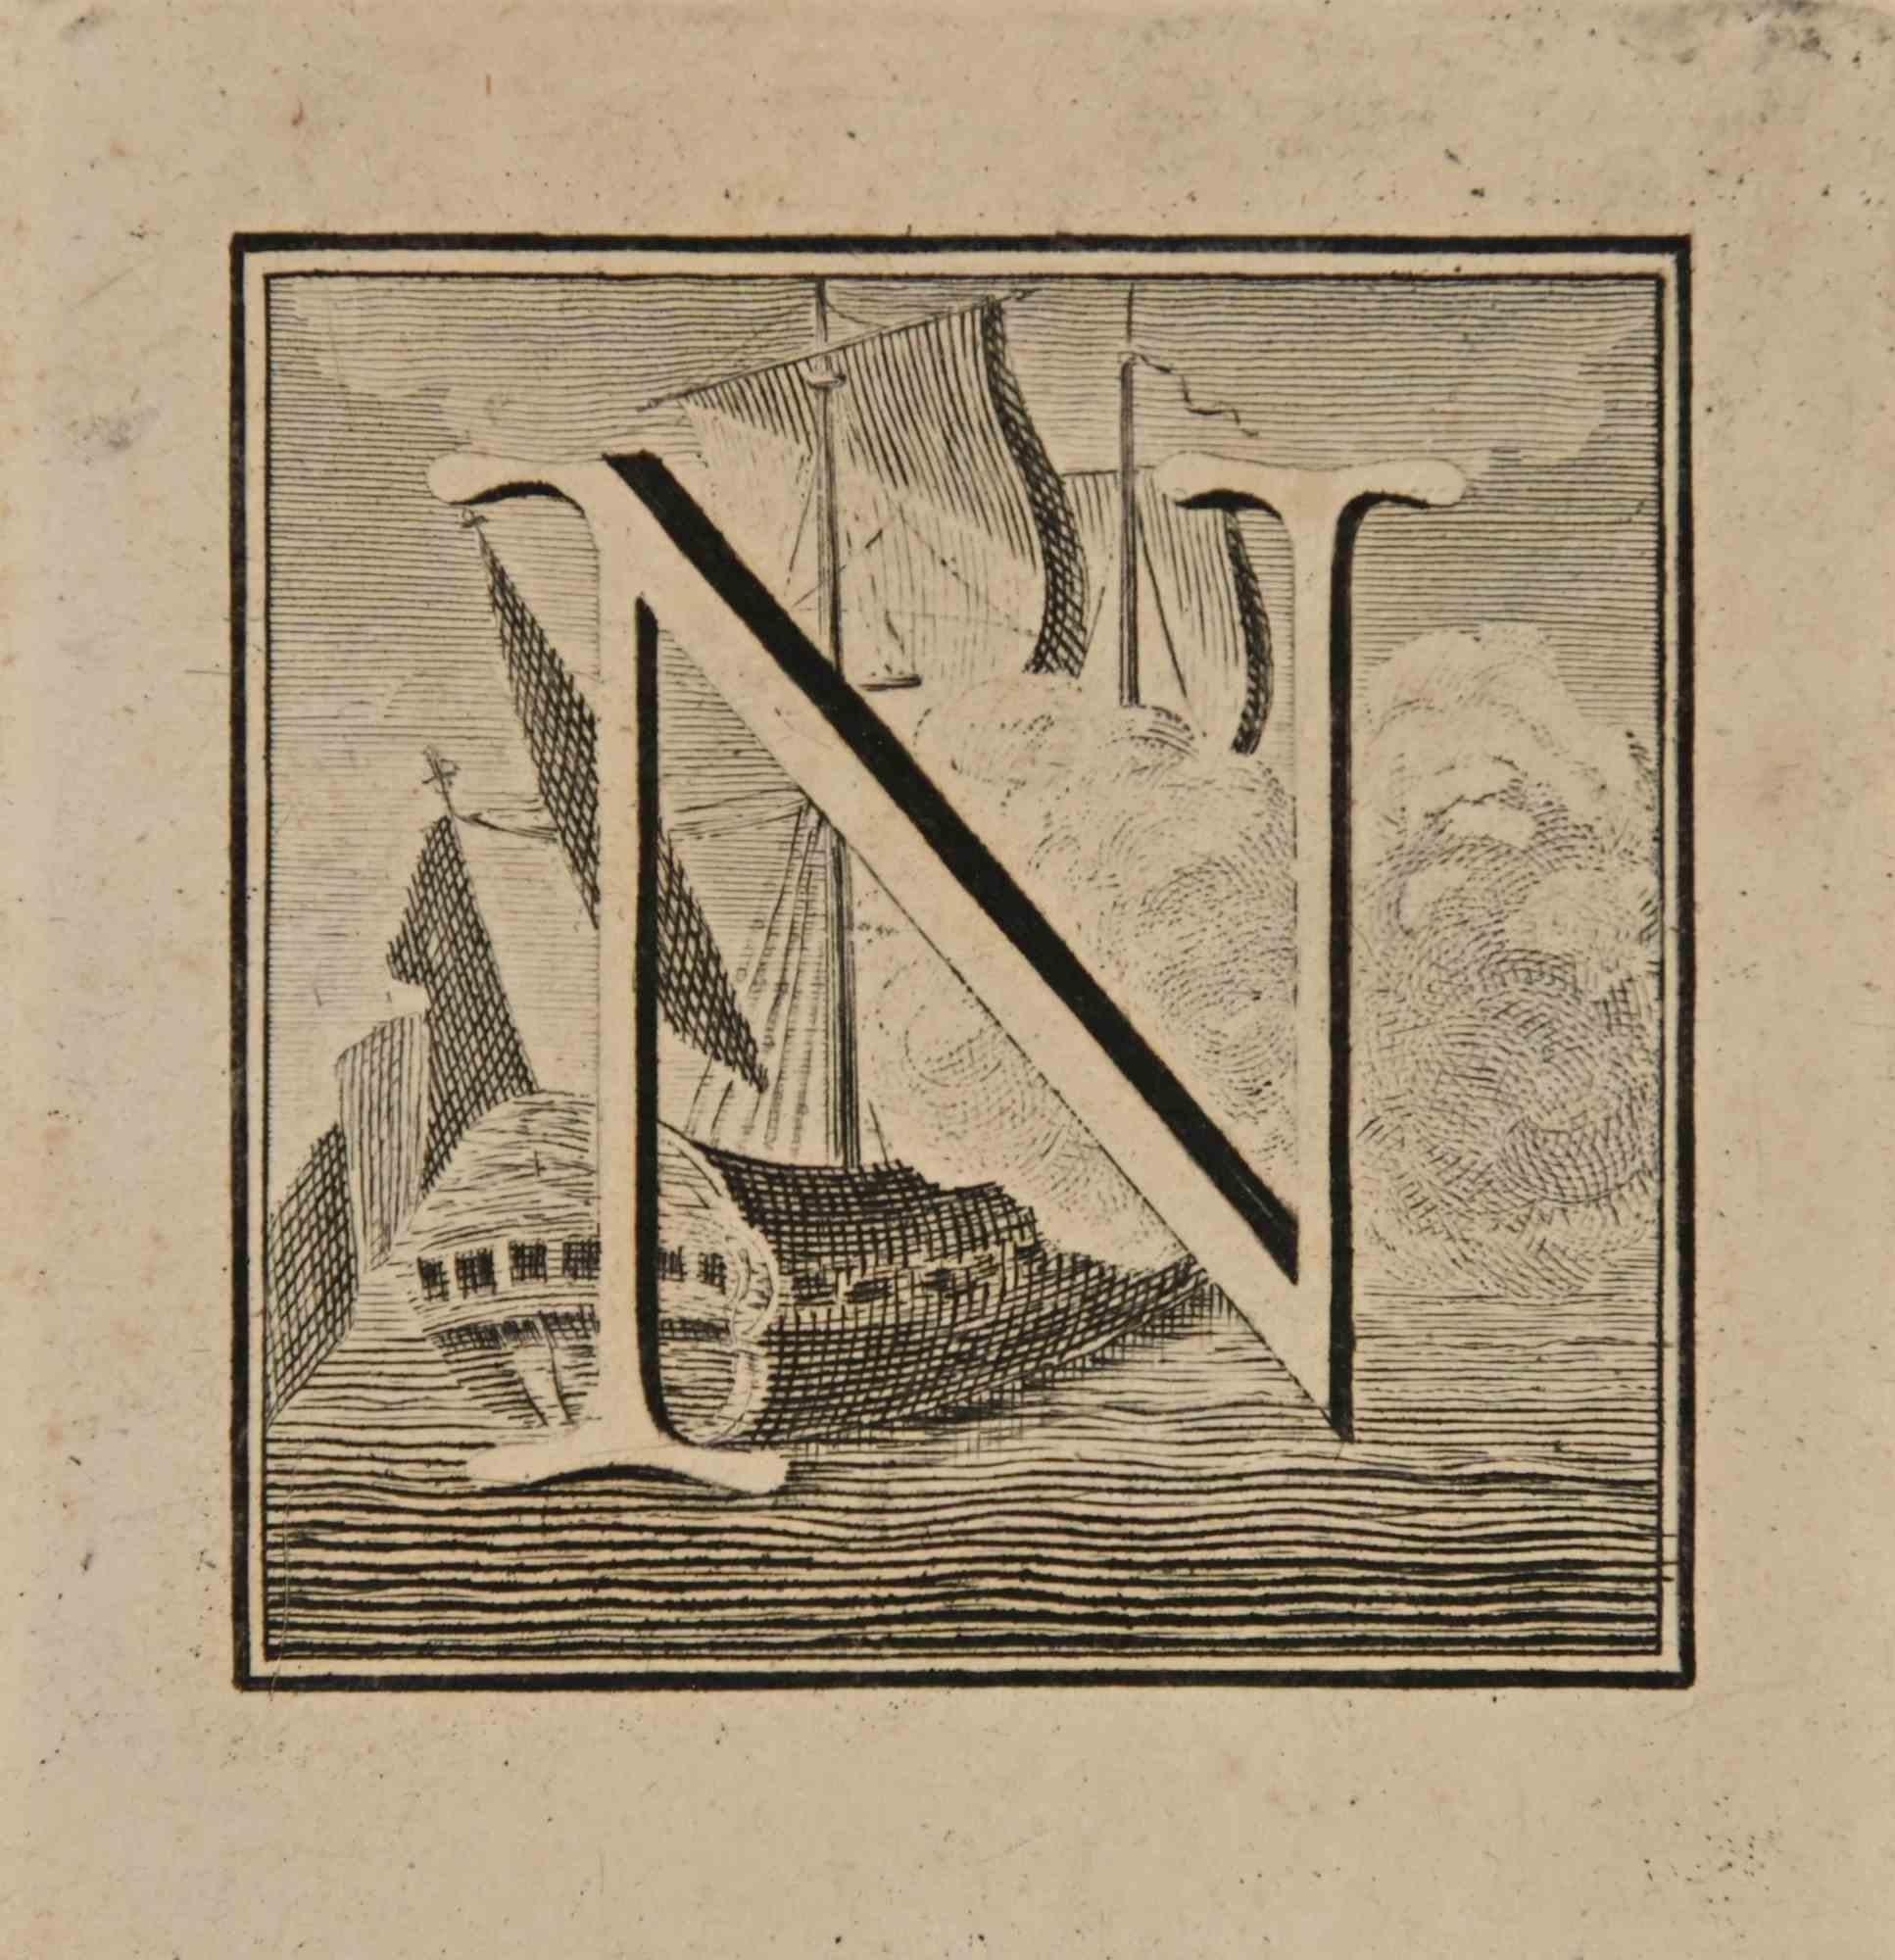 Lettre de l'alphabet N,  de la série "Antiquités d'Herculanum", est une gravure sur papier réalisée par Luigi Vanvitelli au 18ème siècle.

Bonnes conditions.

La gravure appartient à la suite d'estampes "Antiquités d'Herculanum exposées" (titre